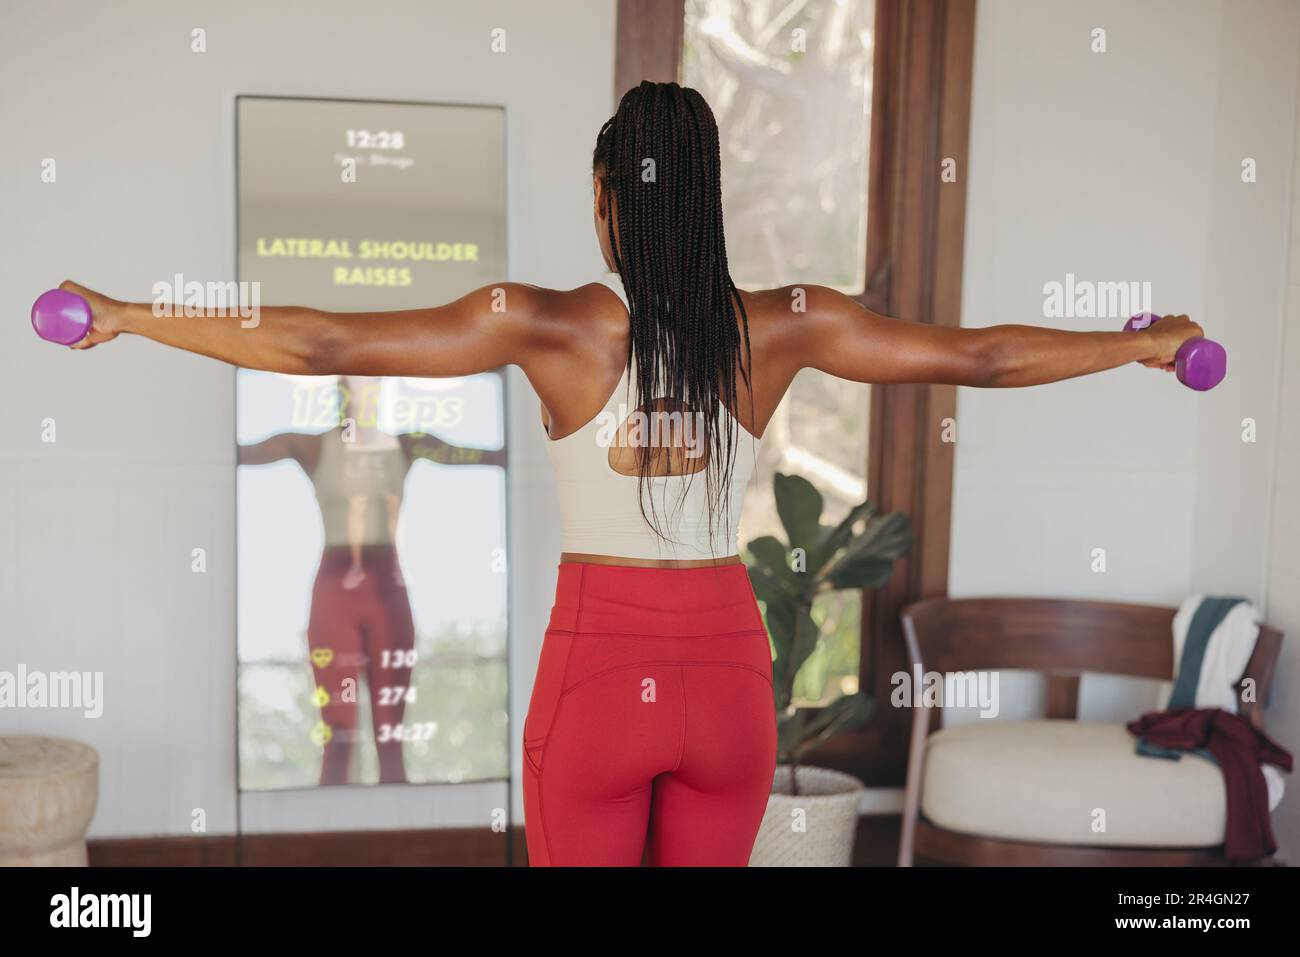 Partecipando a una lezione di allenamento virtuale attraverso uno specchio per il fitness intelligente, una donna aggiunge esercizi a manubrio nella sua routine di allenamento, utilizzando una forma avanzata Foto Stock